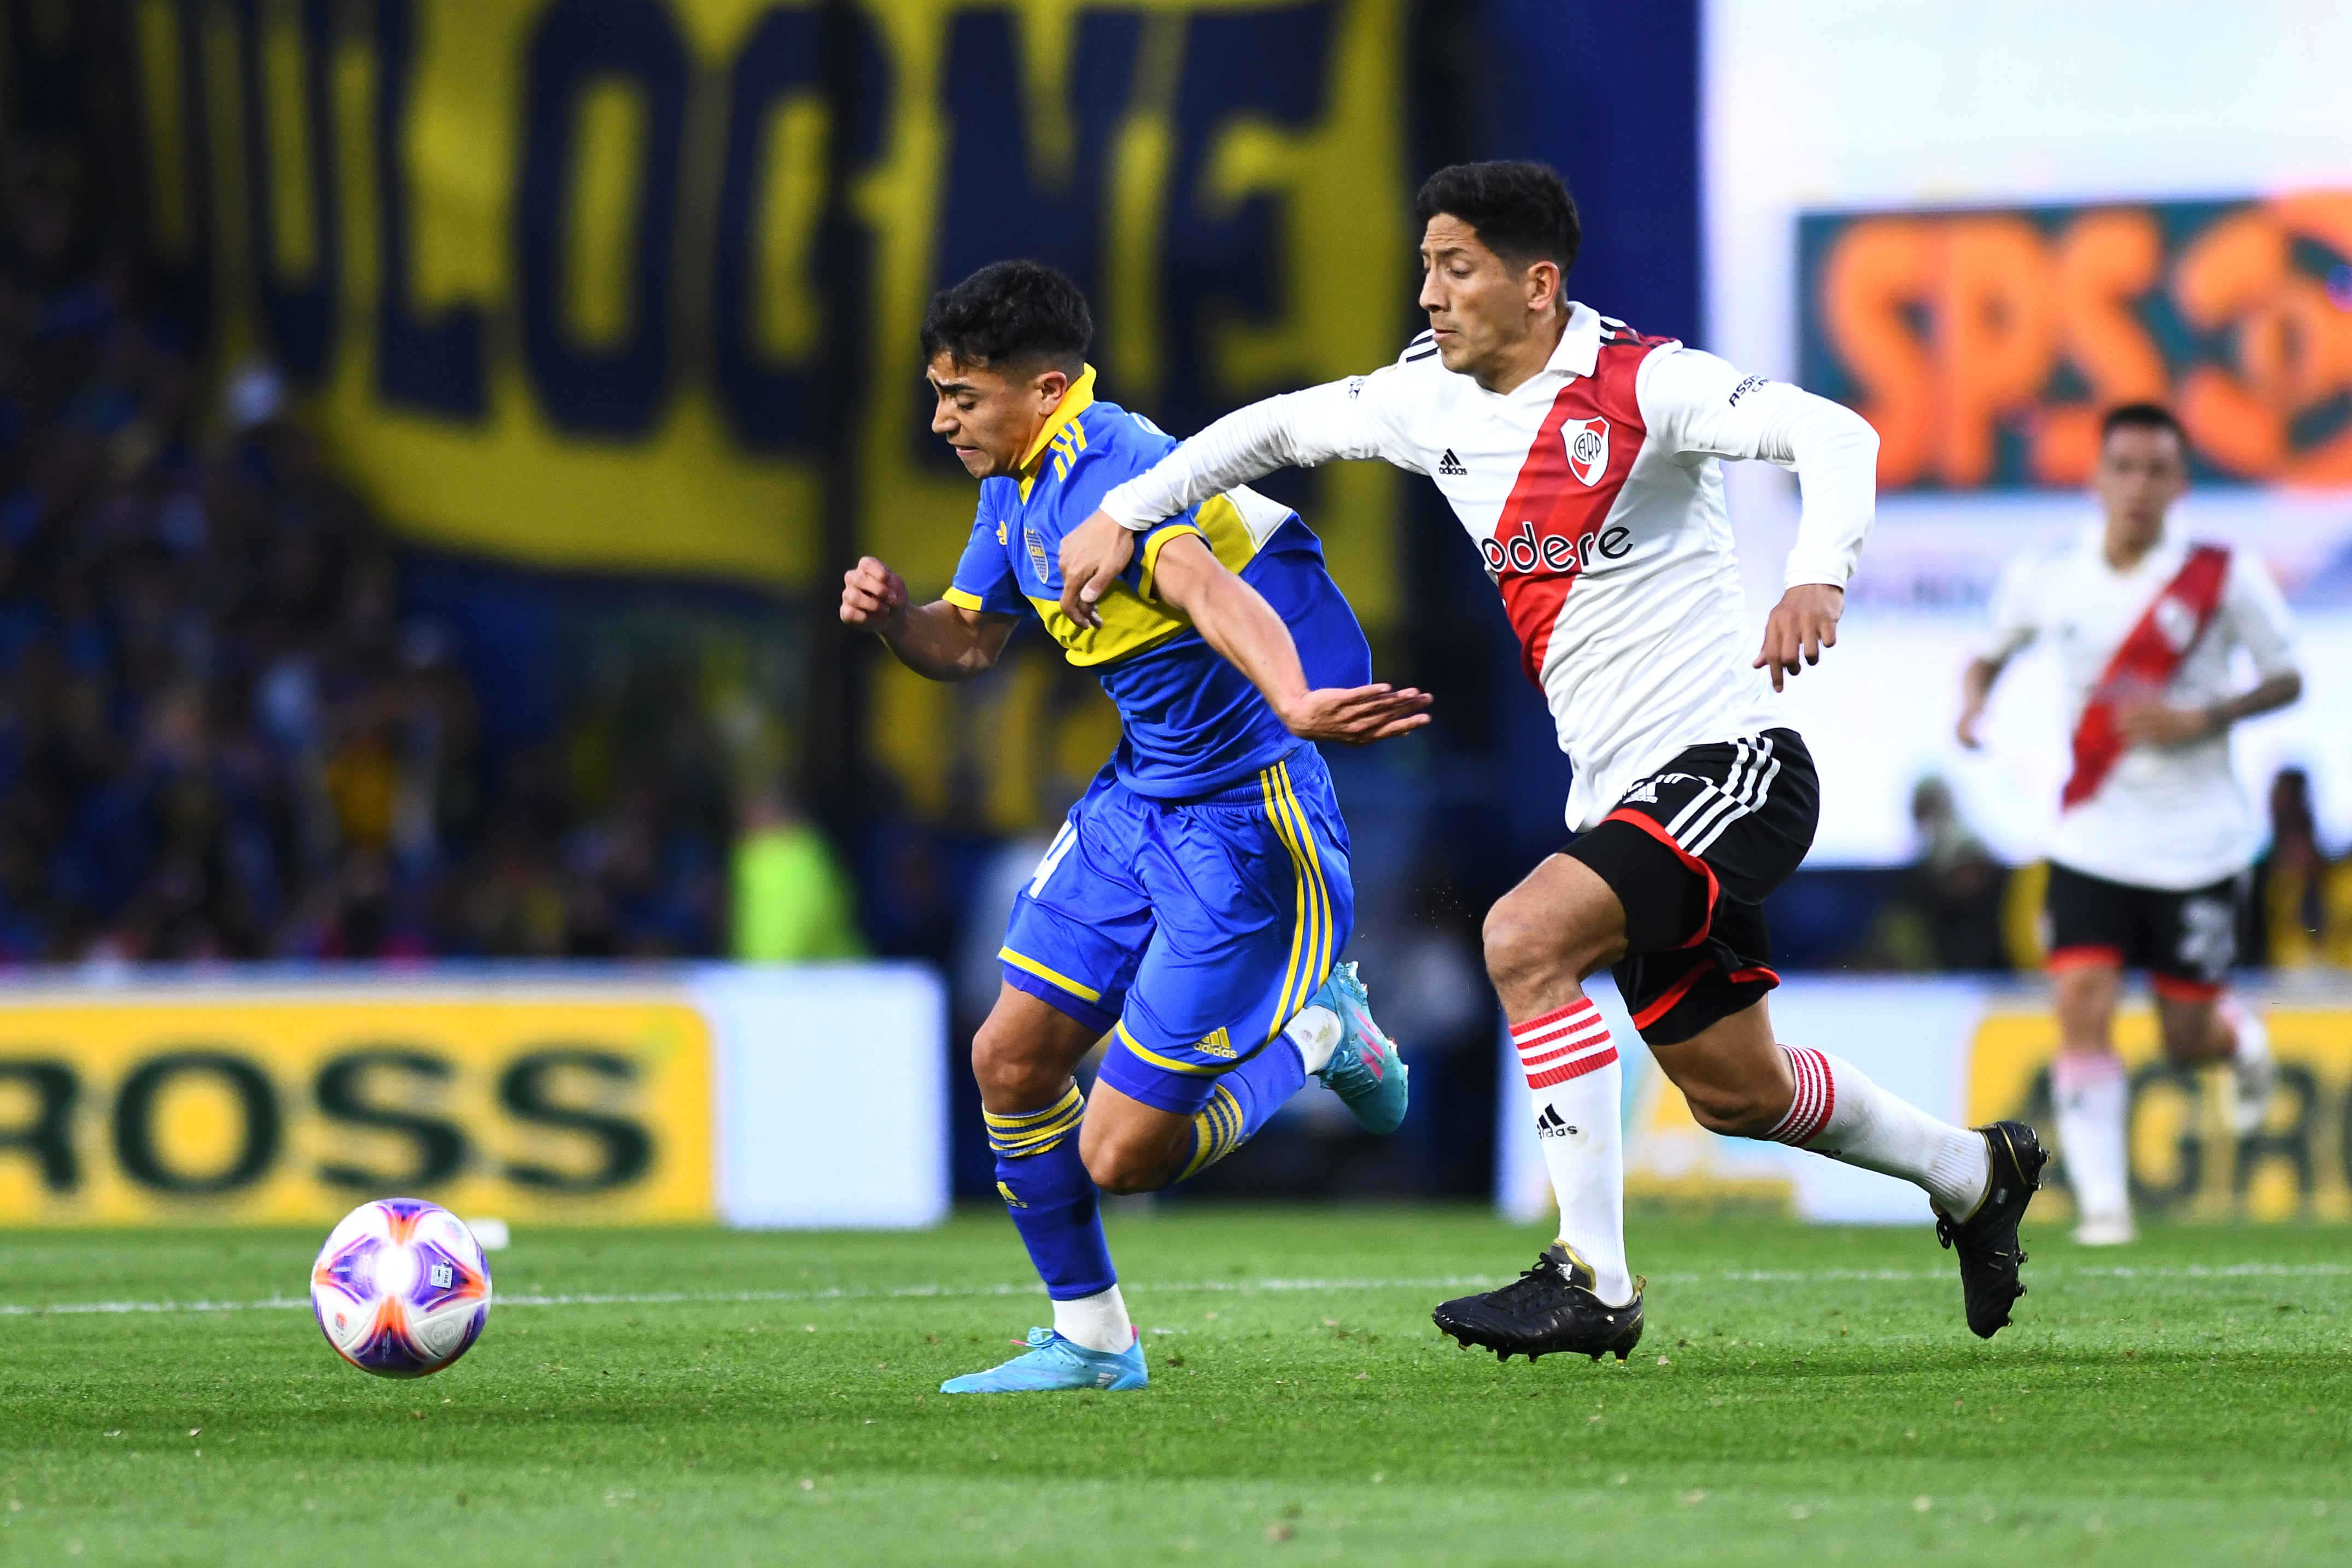 Boca y River harán su debut en la Libertadores como visitante (Photo by Rodrigo Valle/Getty Images)